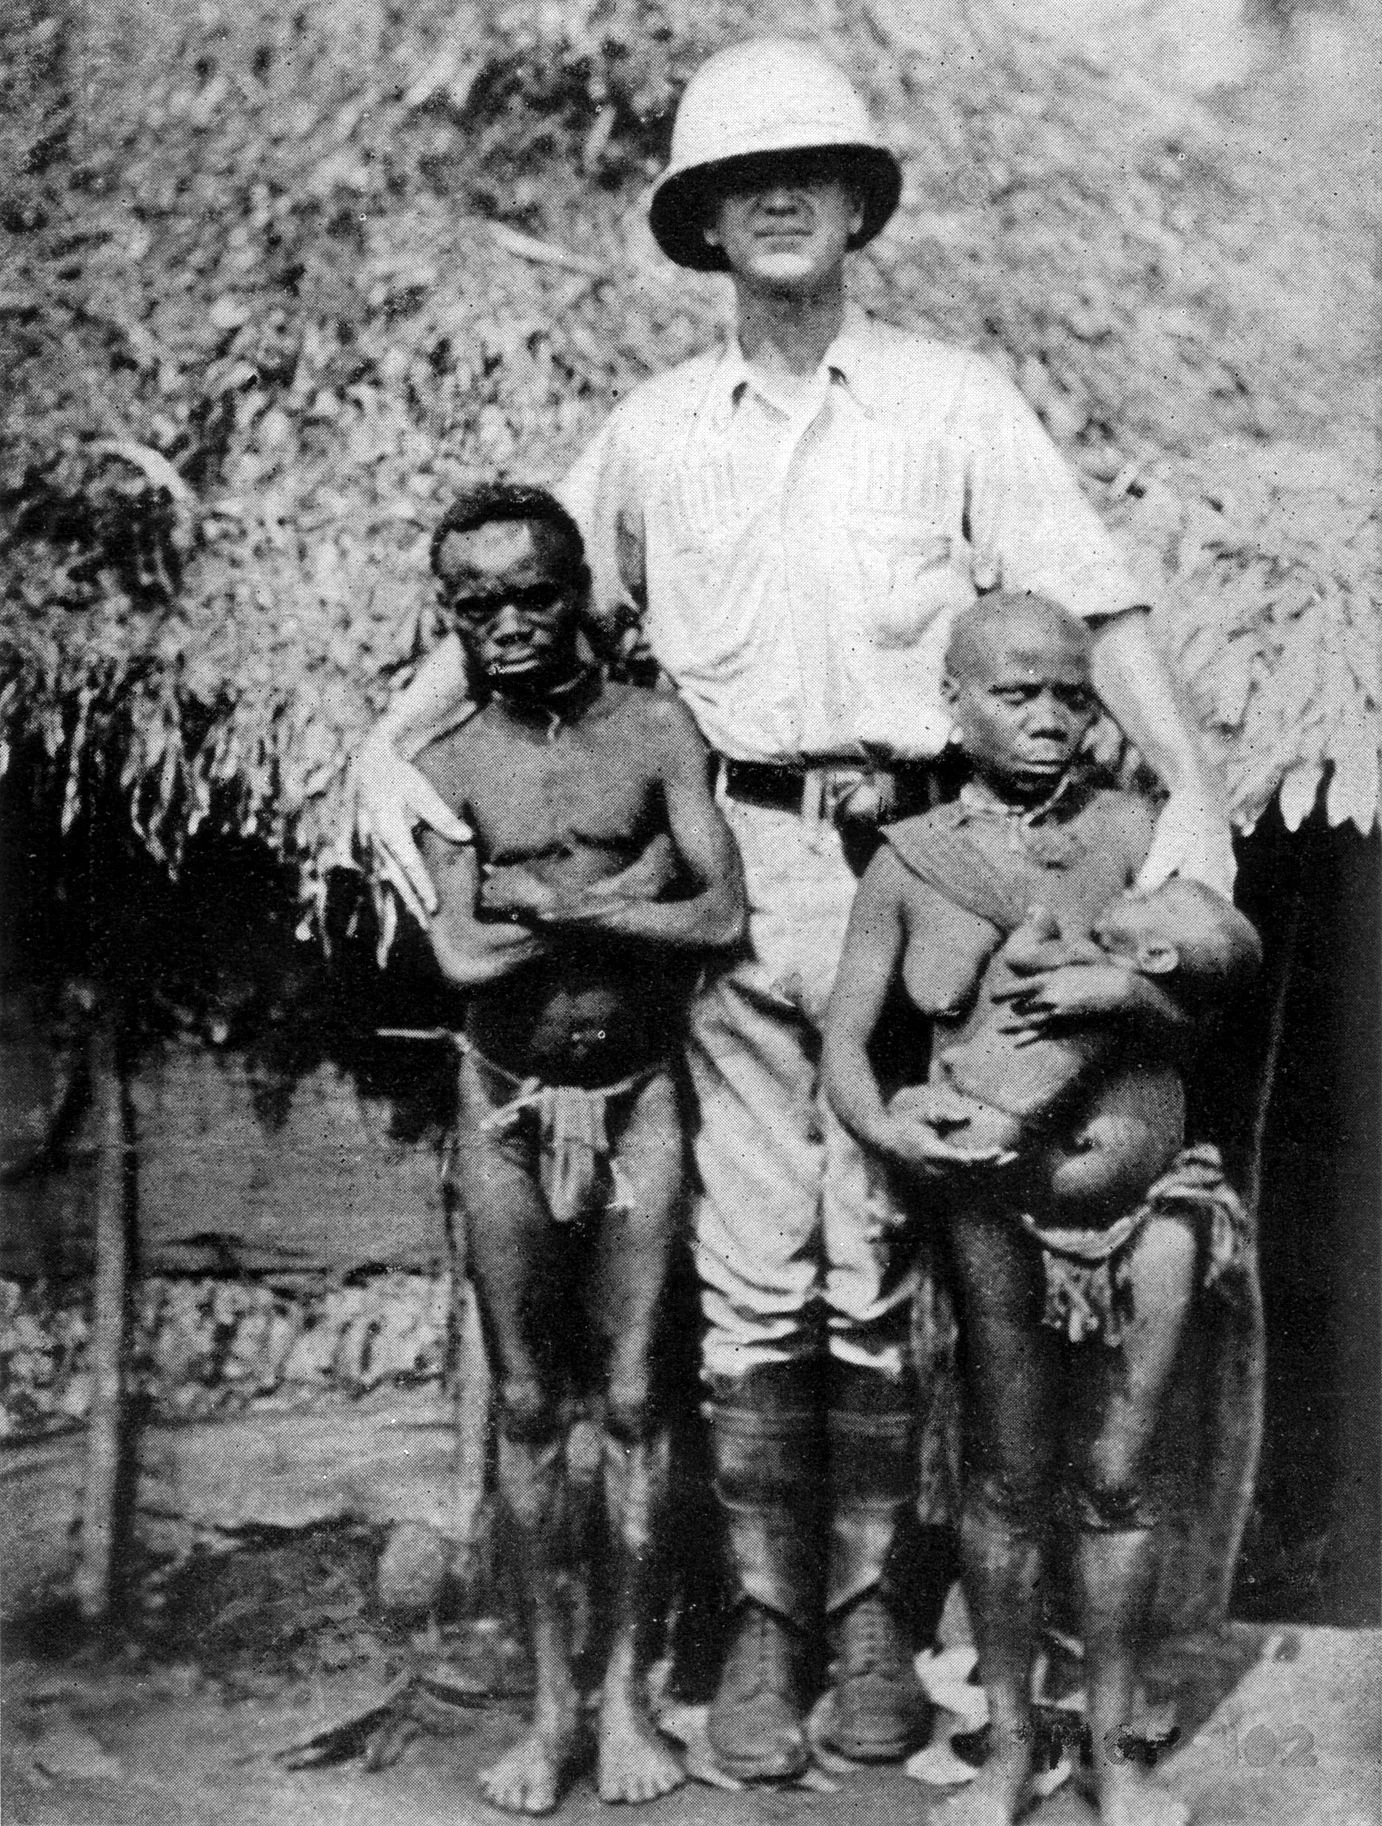 פיגמים אפריקאים לצד חוקר מערבי